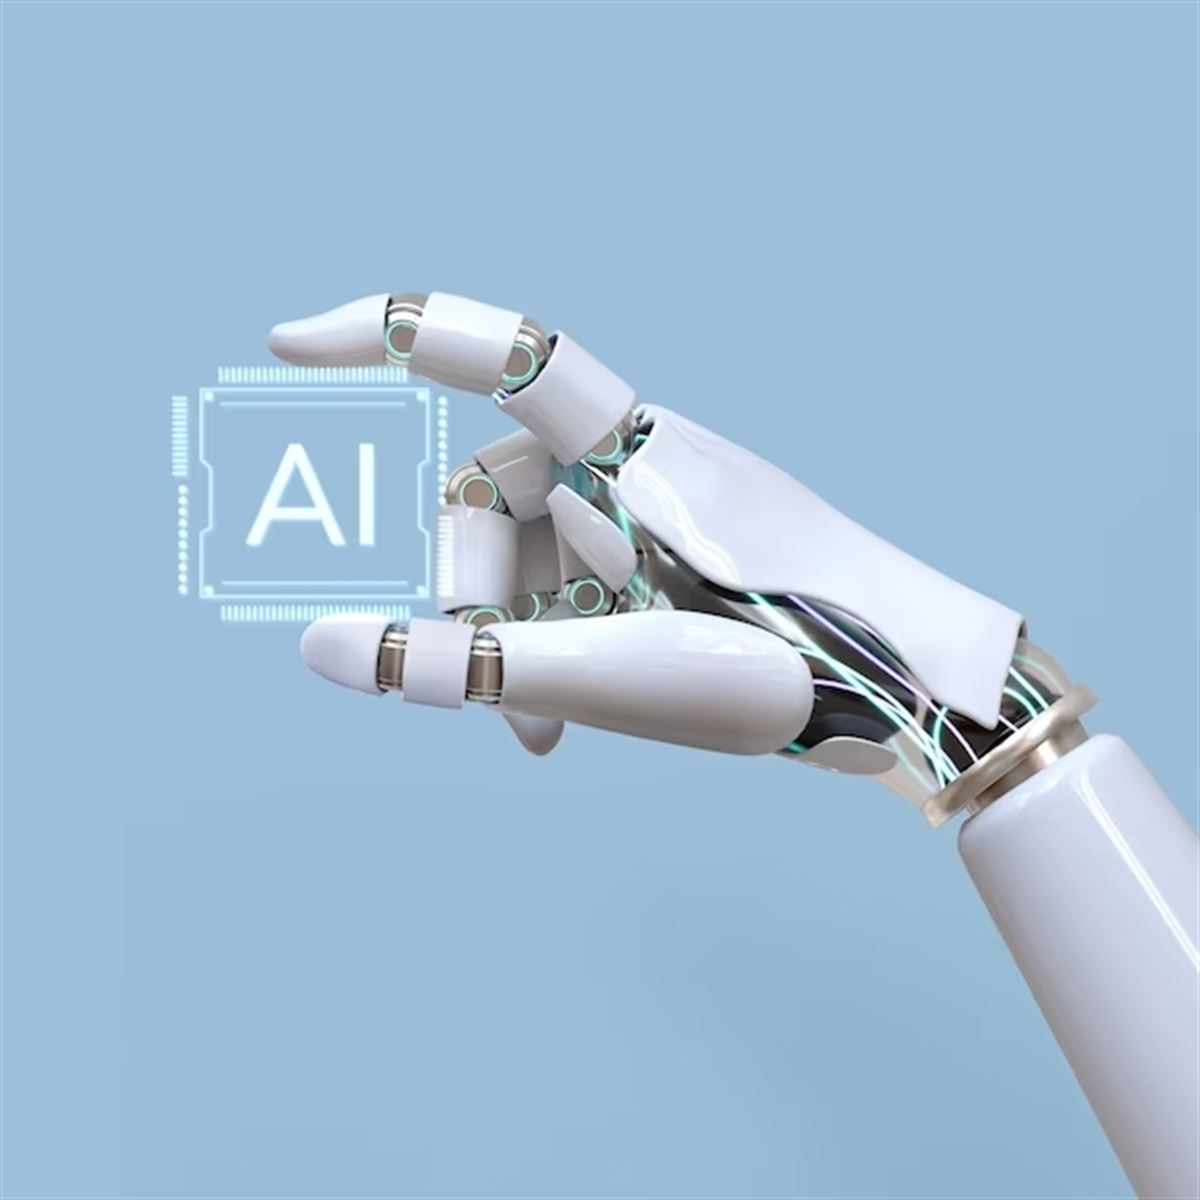 AI (Artificial Intelligence), siglas en inglés de la Inteligencia Artificial. Foto de archivo: EFE